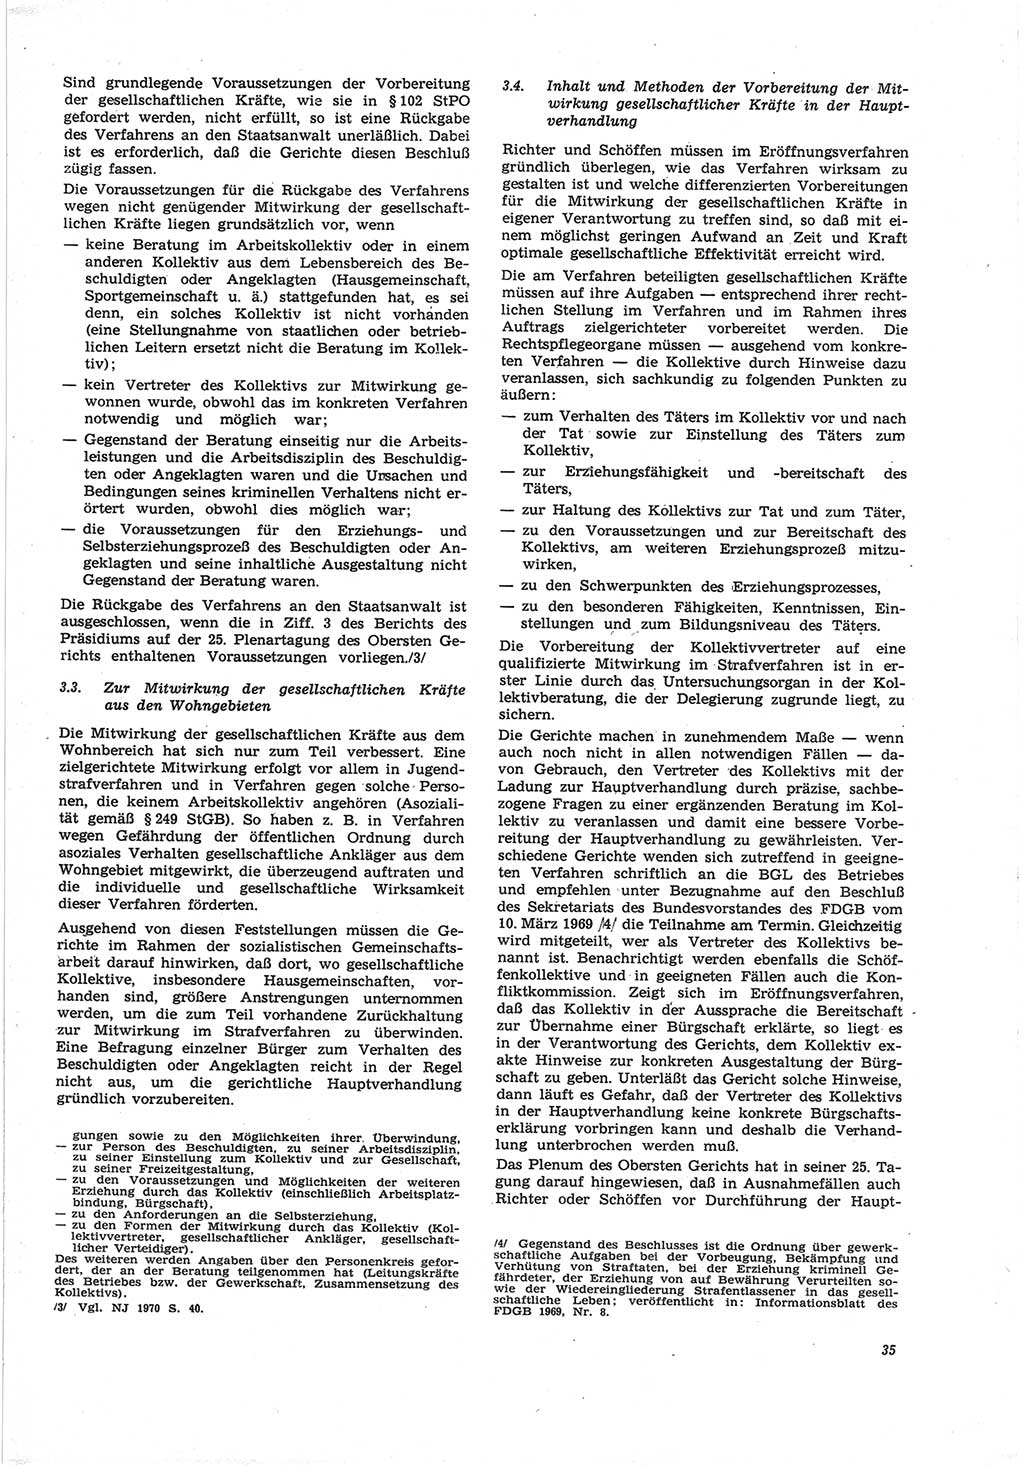 Neue Justiz (NJ), Zeitschrift für Recht und Rechtswissenschaft [Deutsche Demokratische Republik (DDR)], 25. Jahrgang 1971, Seite 35 (NJ DDR 1971, S. 35)